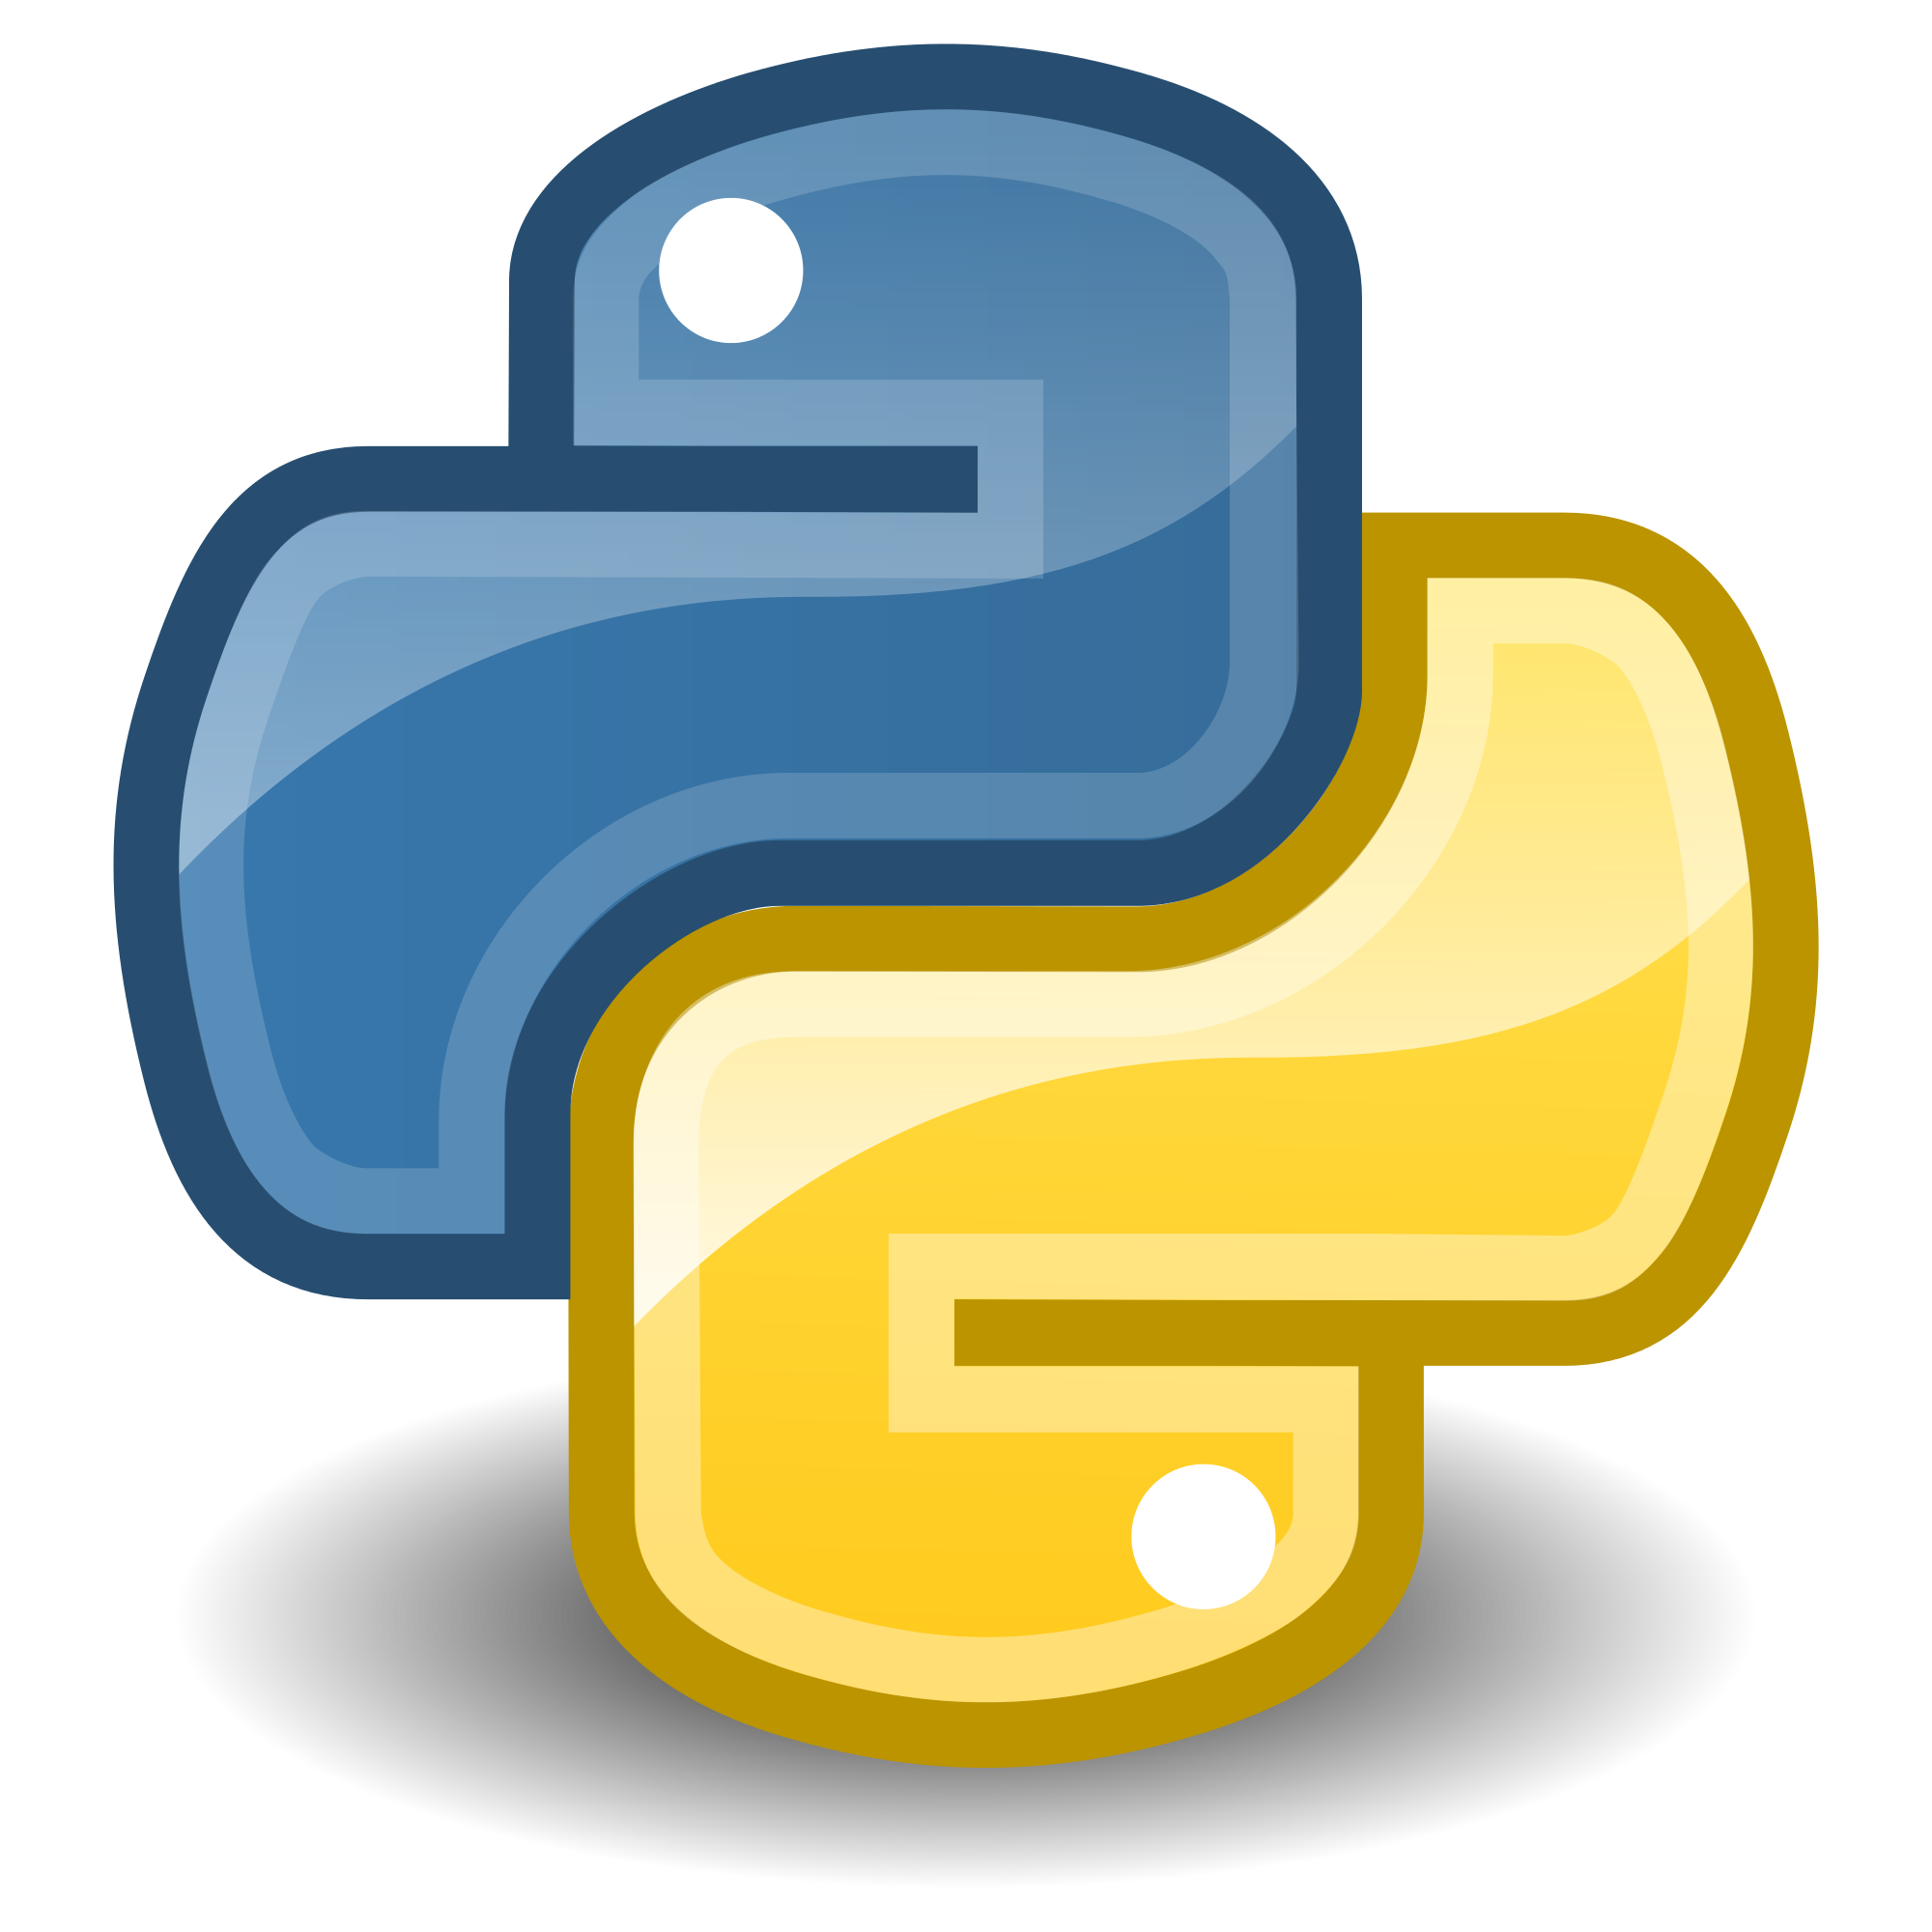 Download PNG image - Python L